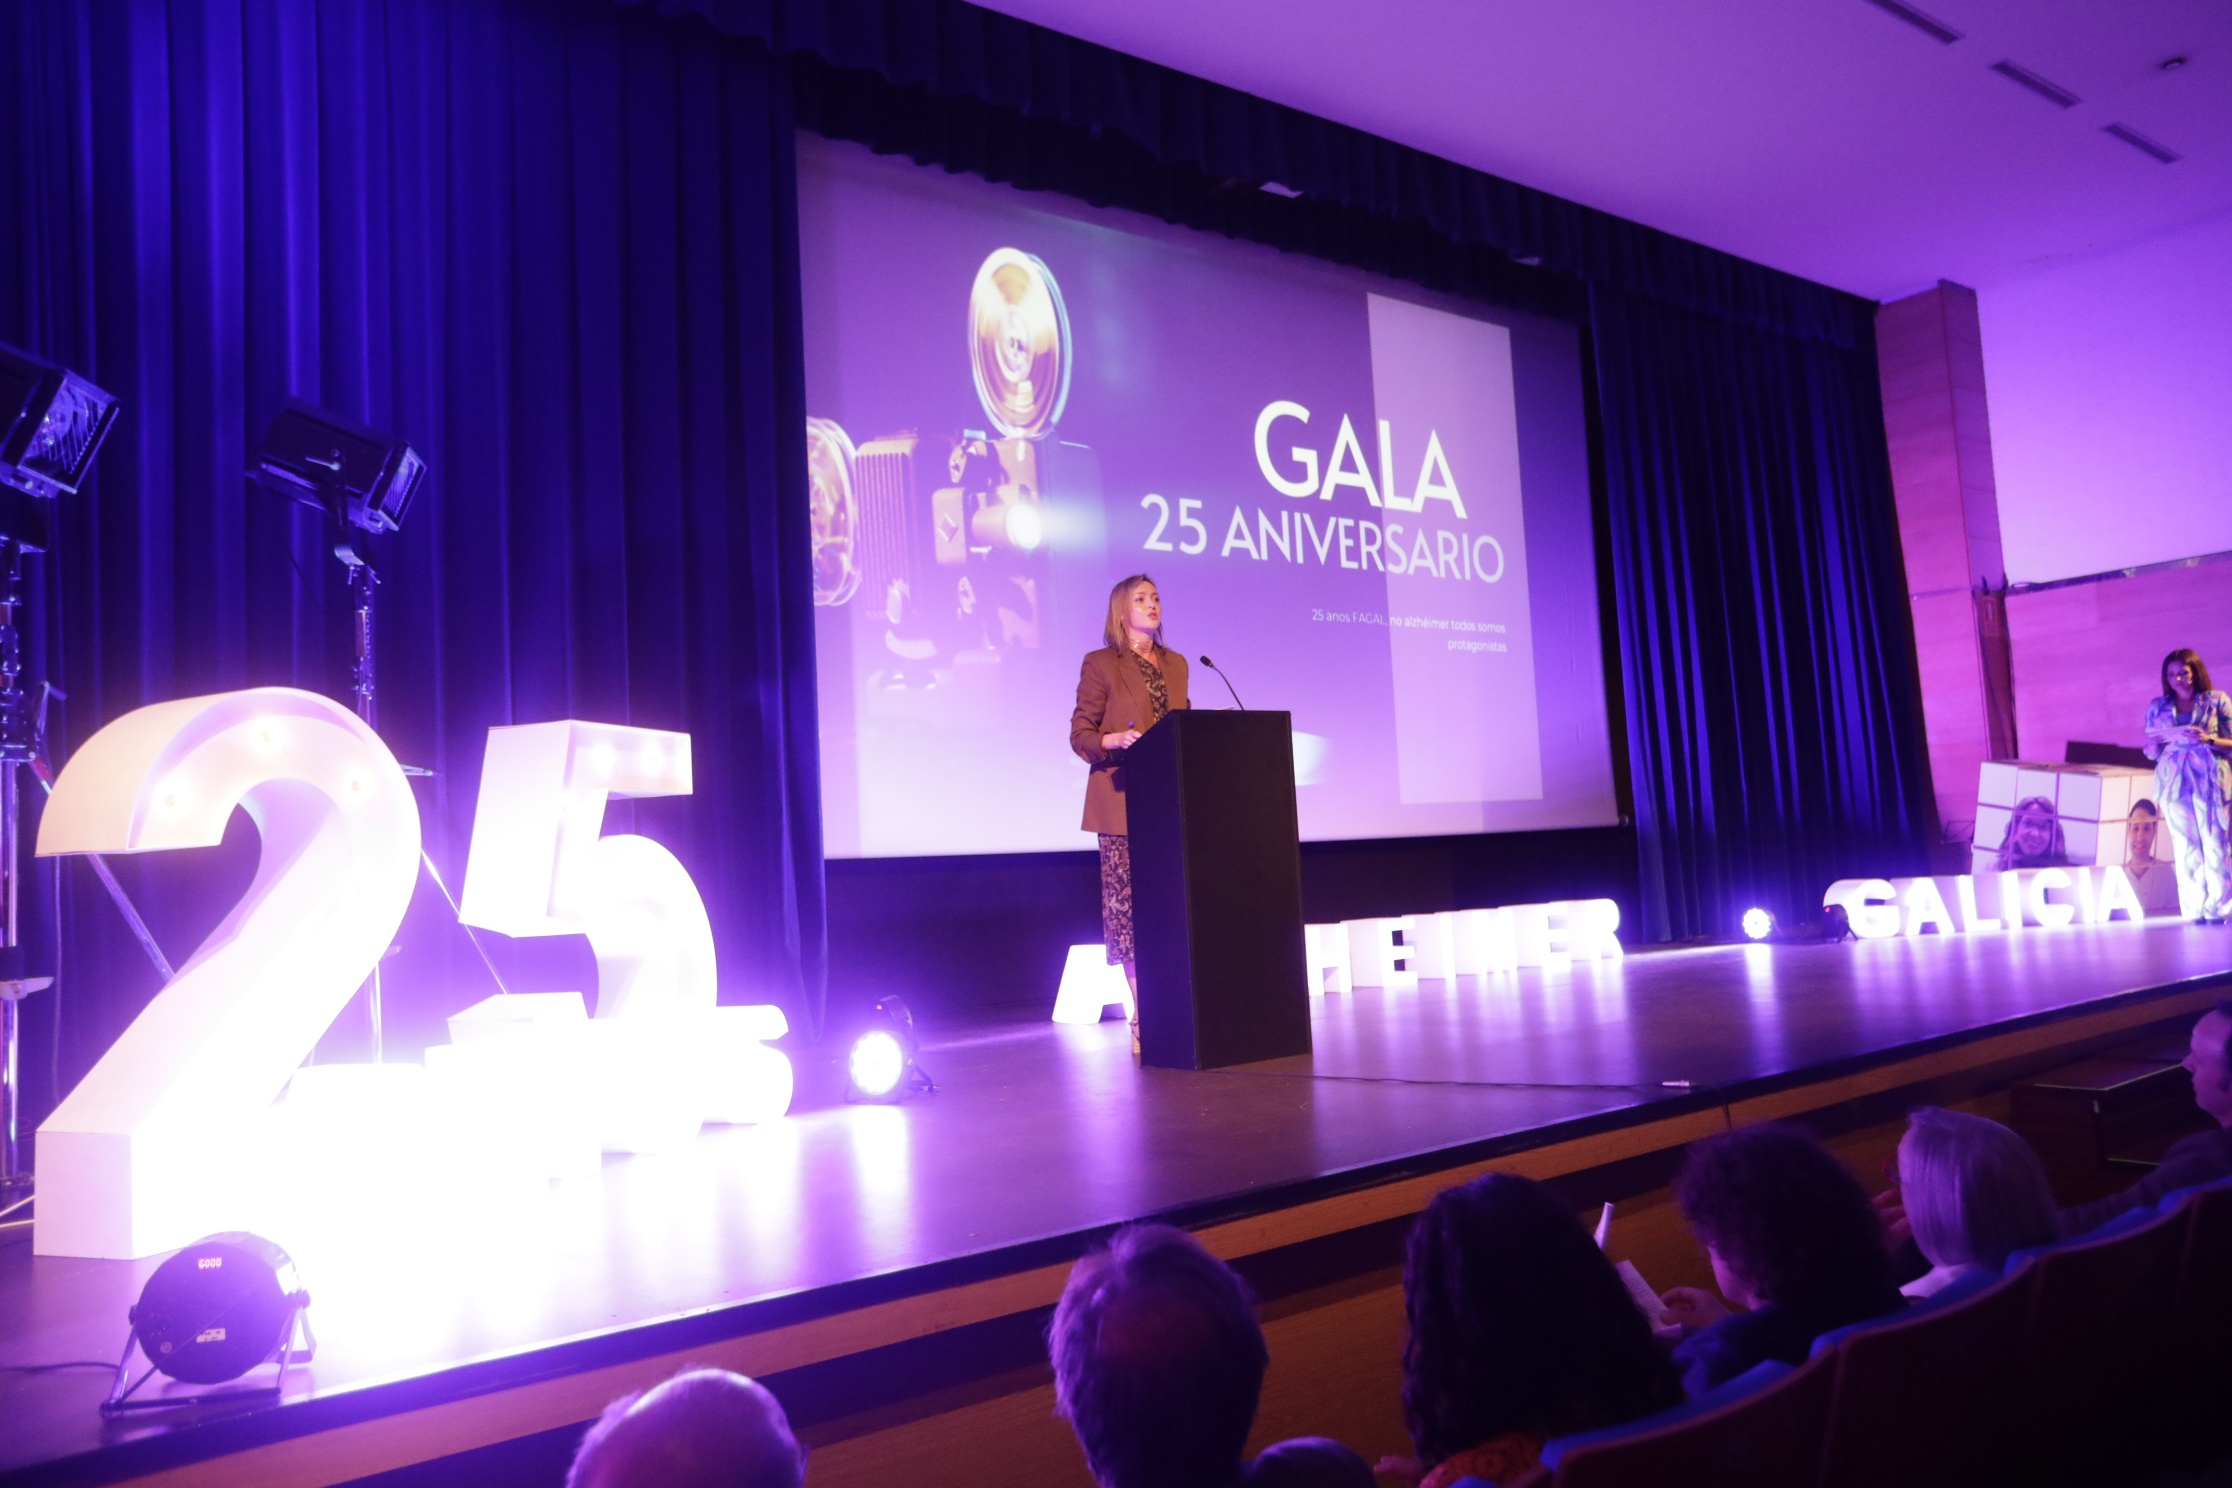 Fabiola García reafirma el compromiso de la Xunta con las personas con alzhéimer y sus familias en la gala del 25 aniversario de Fagal